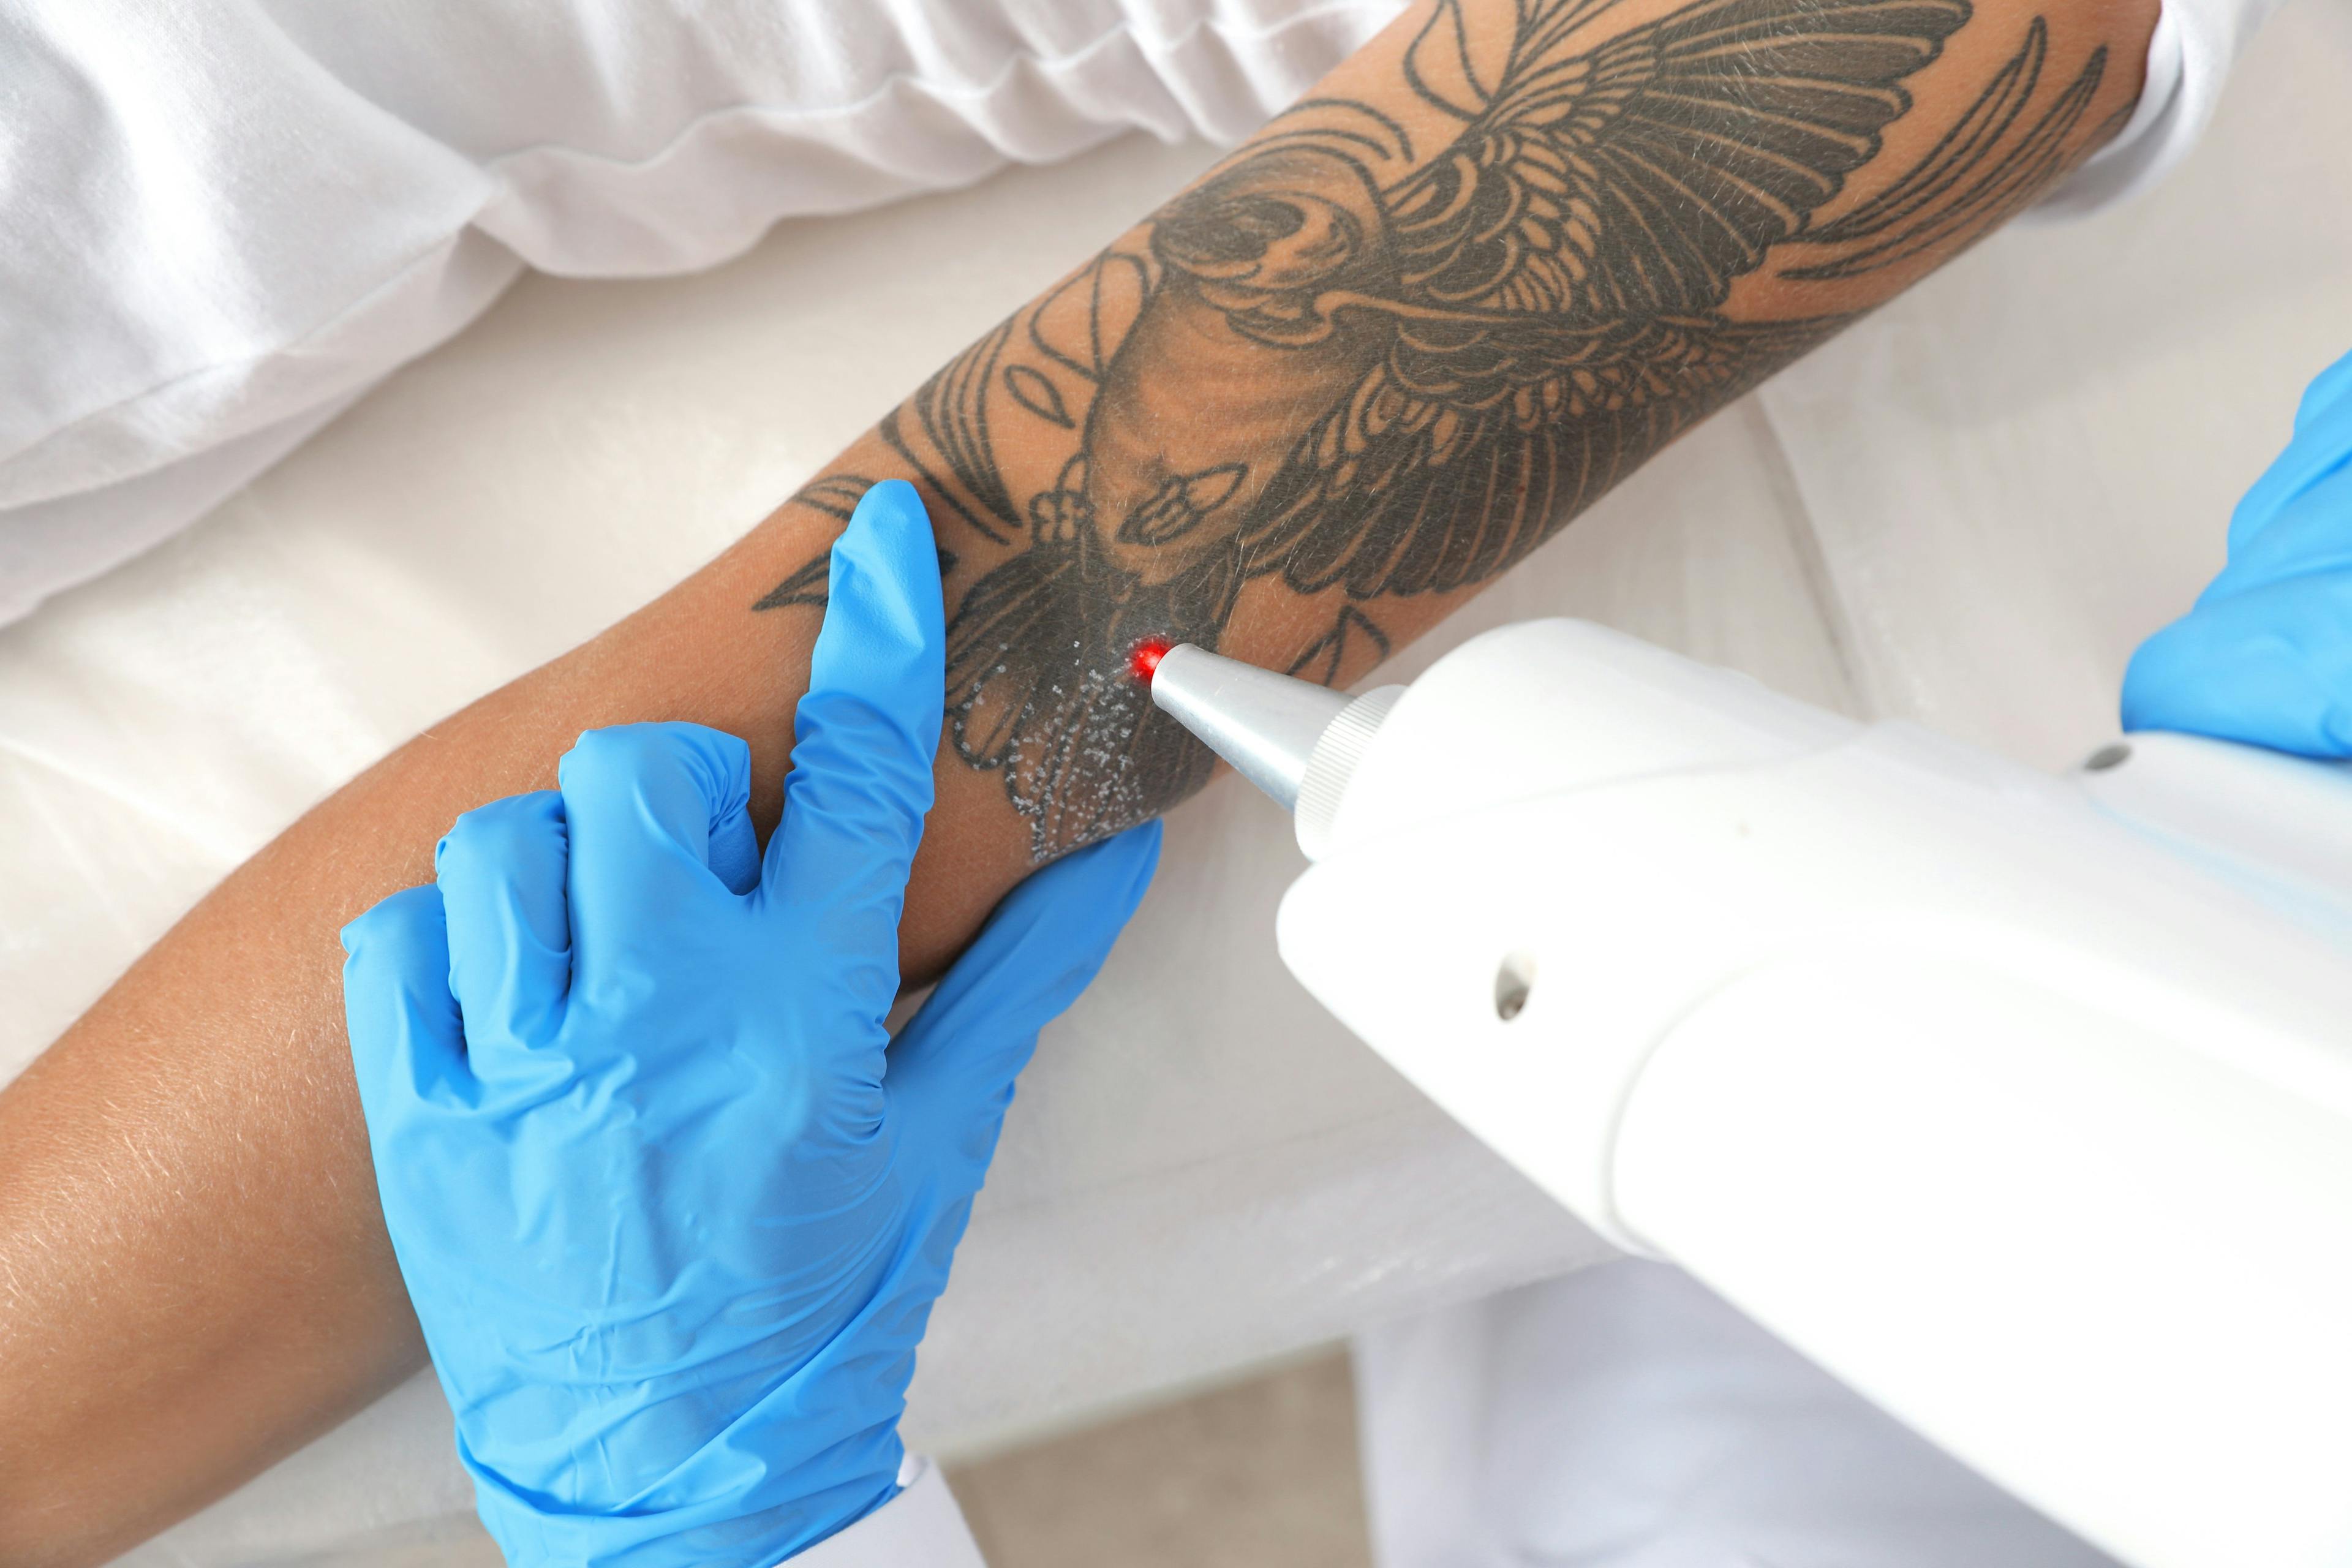 tattoo removal